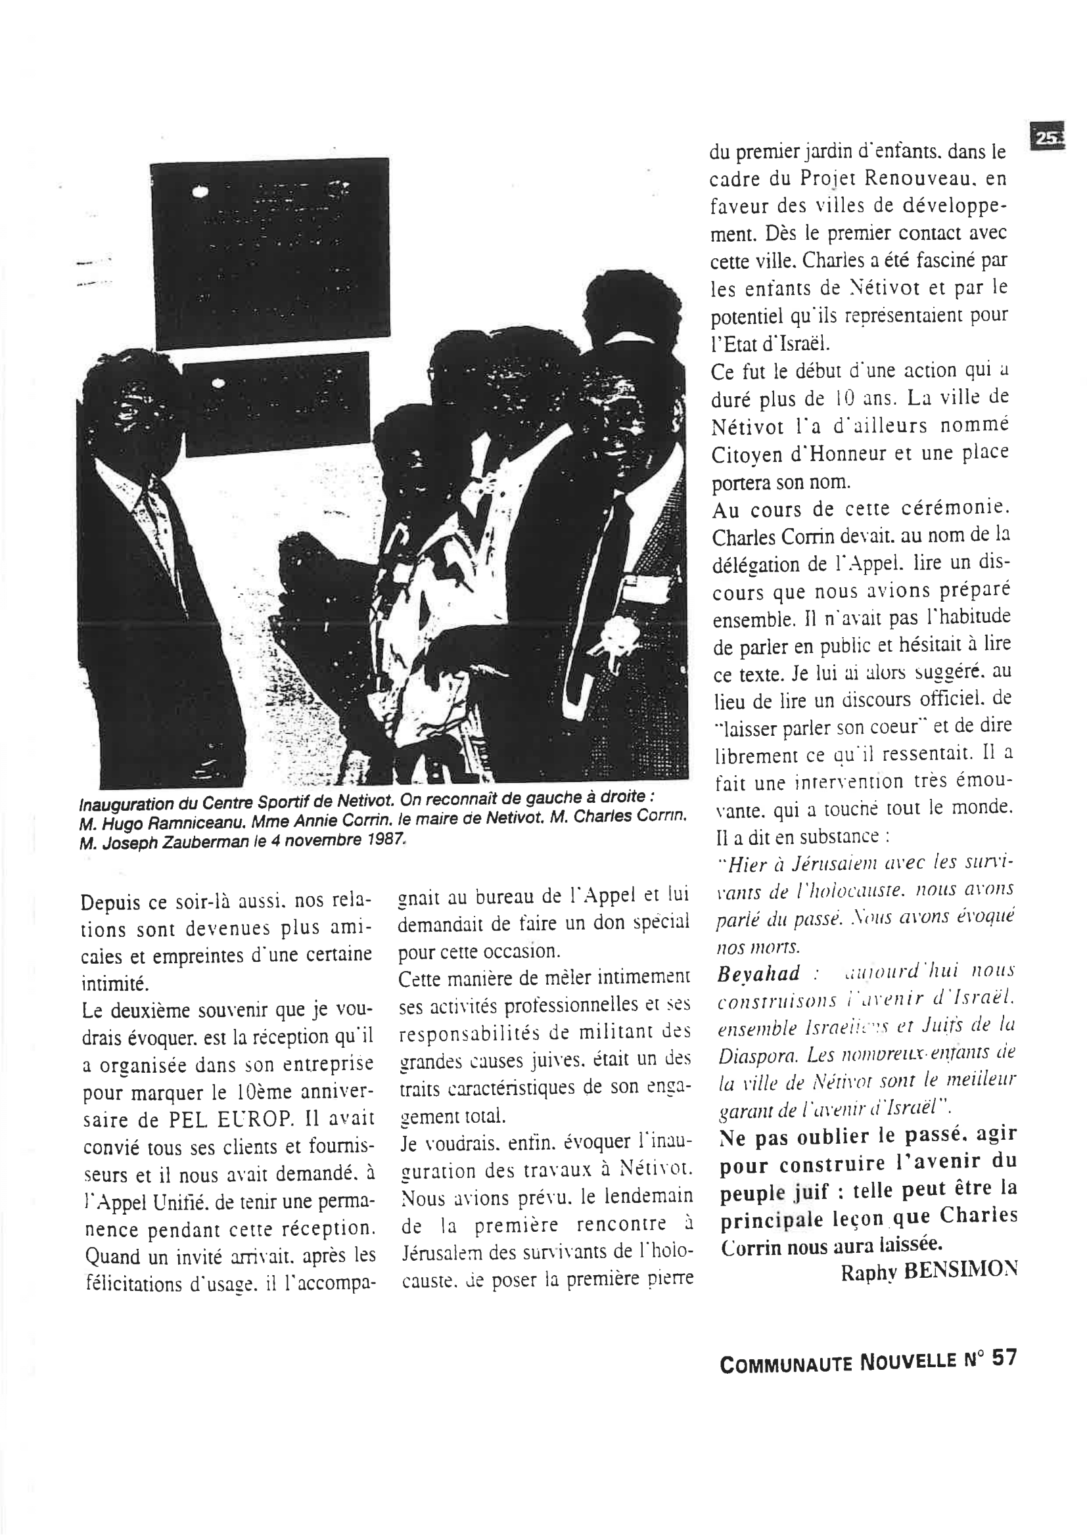 1987- AUJF-Charles Corrin citoyen d'honneur de la ville de Netivot (1)-2